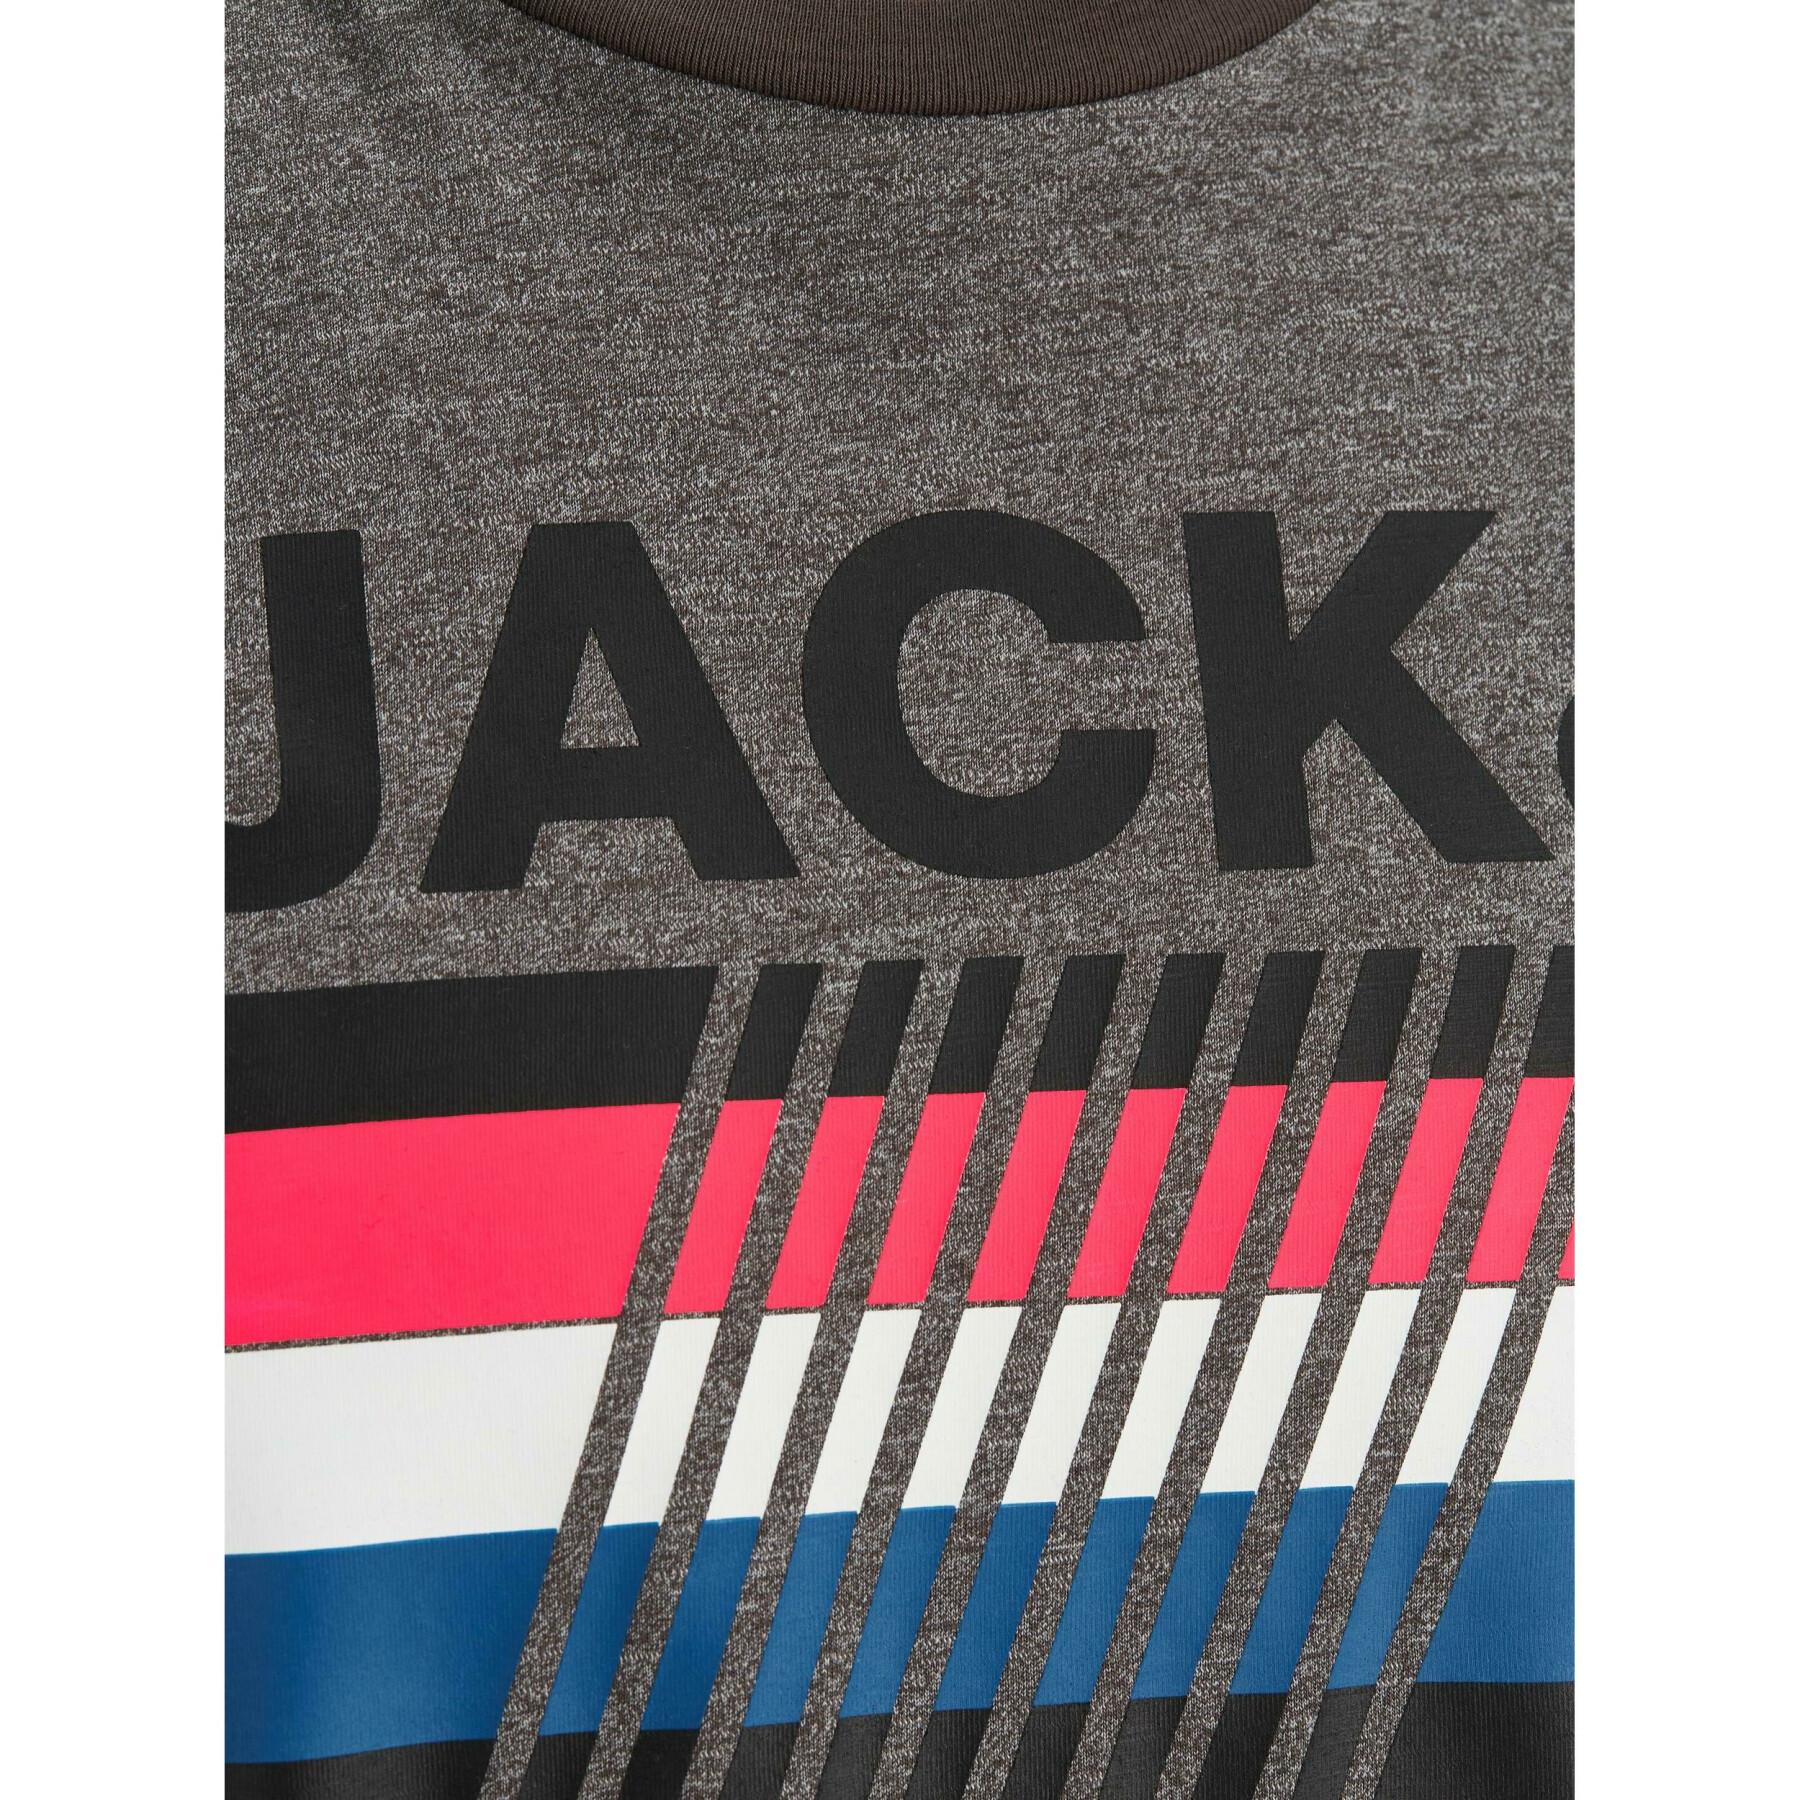 Koszulka Jack & Jones Mountain